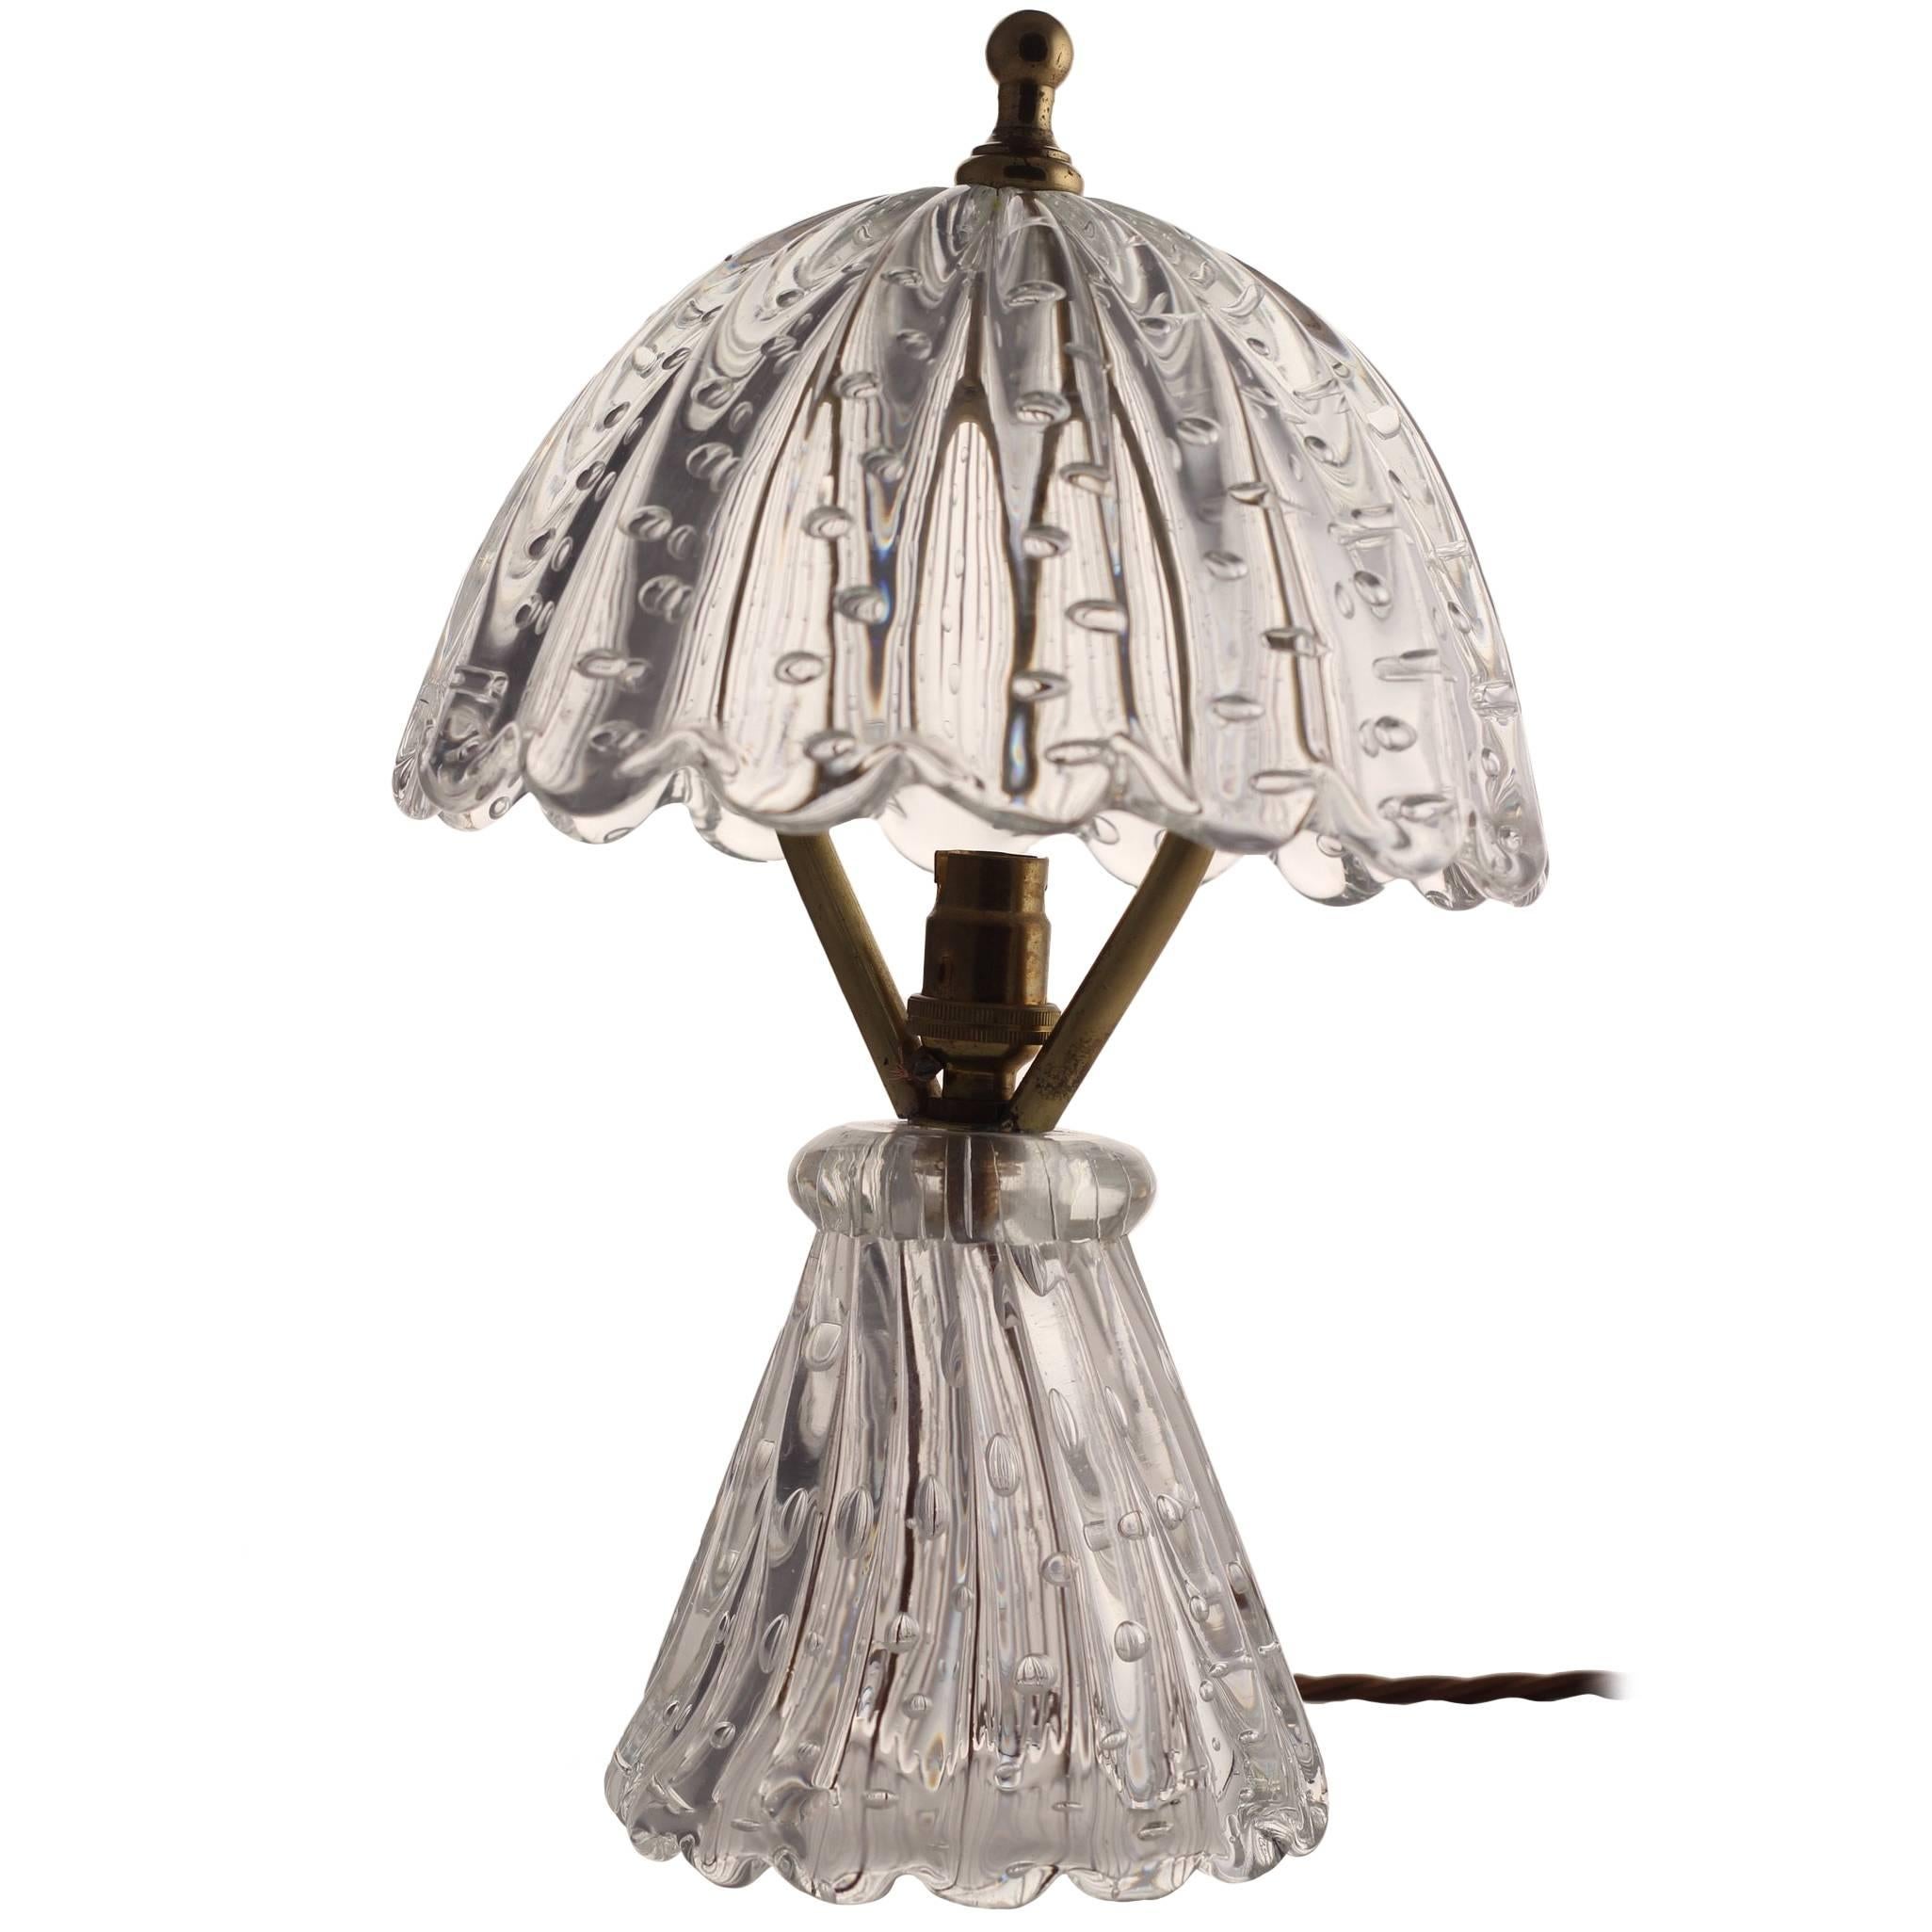 Midcentury Barovier Mushroom Glass Table Lamp